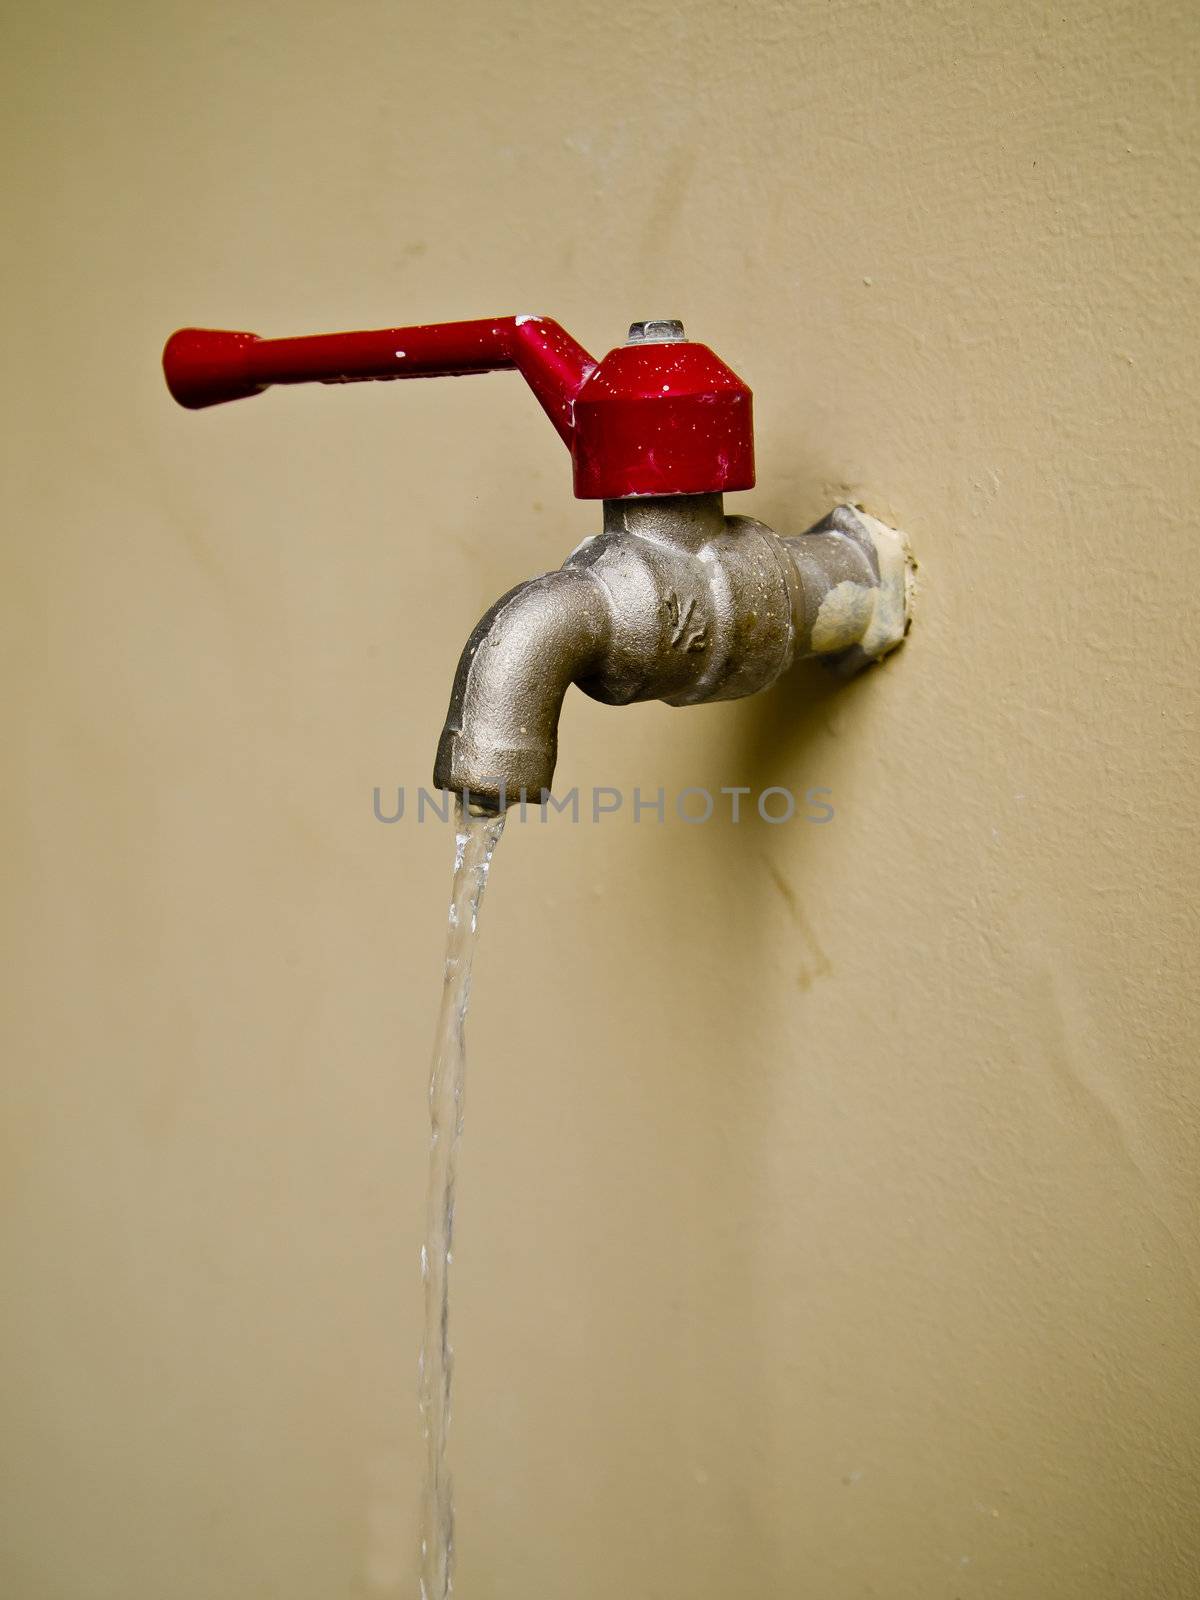 Red water tap on wall by gjeerawut